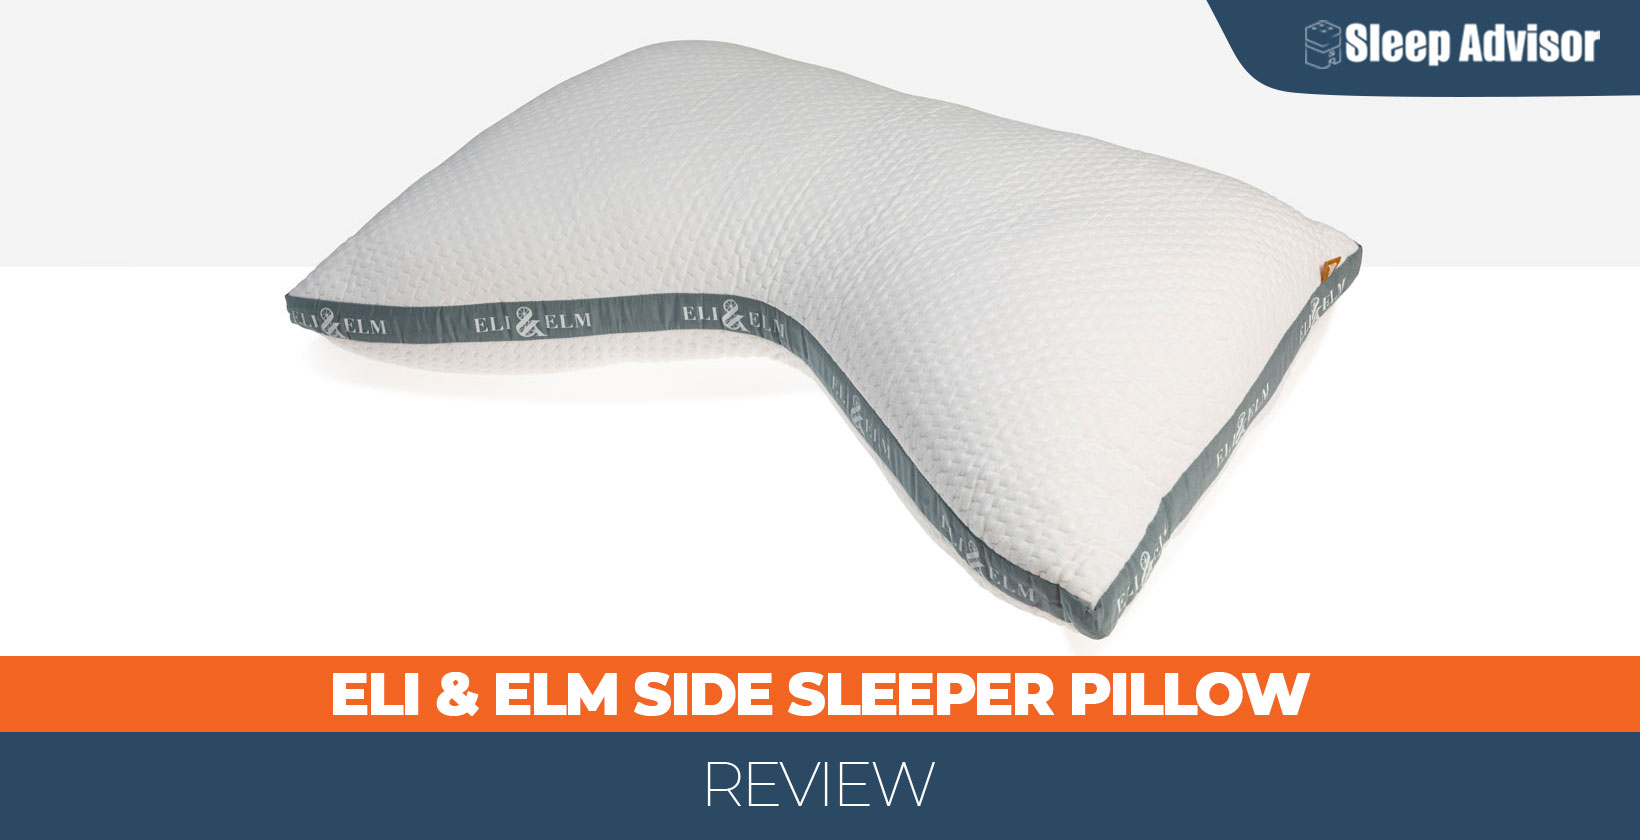 https://www.sleepadvisor.org/wp-content/uploads/2022/08/Eli-Elm-side-sleeper-pillow-review-1640x840px.jpg